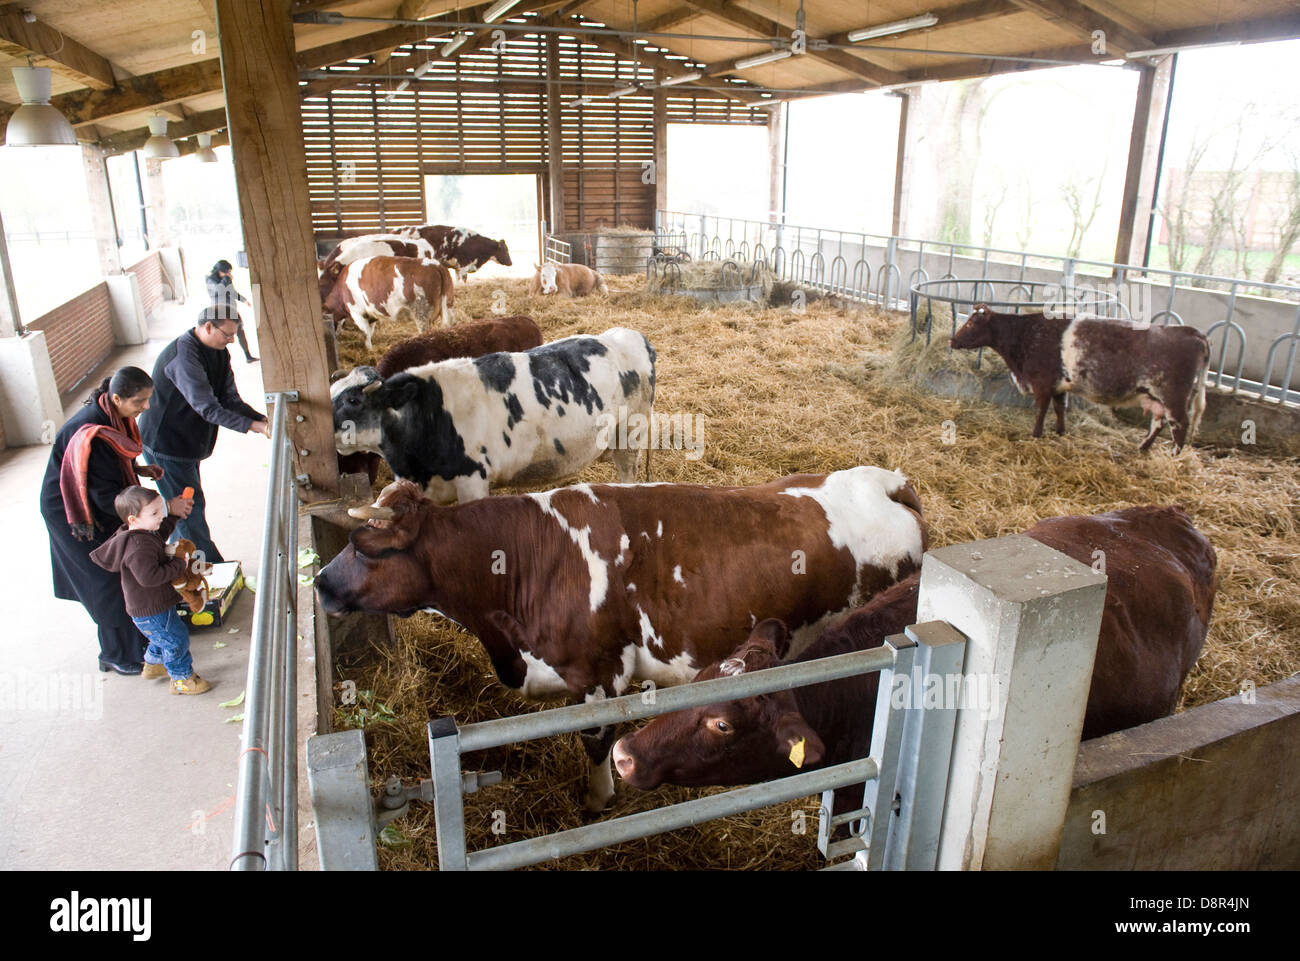 El Hare Krishna manada de 44 vacas y bueyes en George Harrison's mansión en Hertfordshire, es tan tranquilo como un templo. Gokul Dairy Farm [significado lugar de vacas ] comprende 44 vacas y bueyes parte de George Harrison's mansión Bhaktivedanta Manor en Hertfordshire . Una £2.5m 'protegidas' complejo de vaca se la ha denominado una "Hilton" para las vacas y un plan sostenible para la producción lechera. Los 3.000 metros cuadrados de edificio que es el hogar de invierno de la manada, es un cruce entre un vivero, un workhouse y una casa de vacas viejas. Aunque no está a la venta al público cuesta €3,00/litro para producir la leche. El Foto de stock